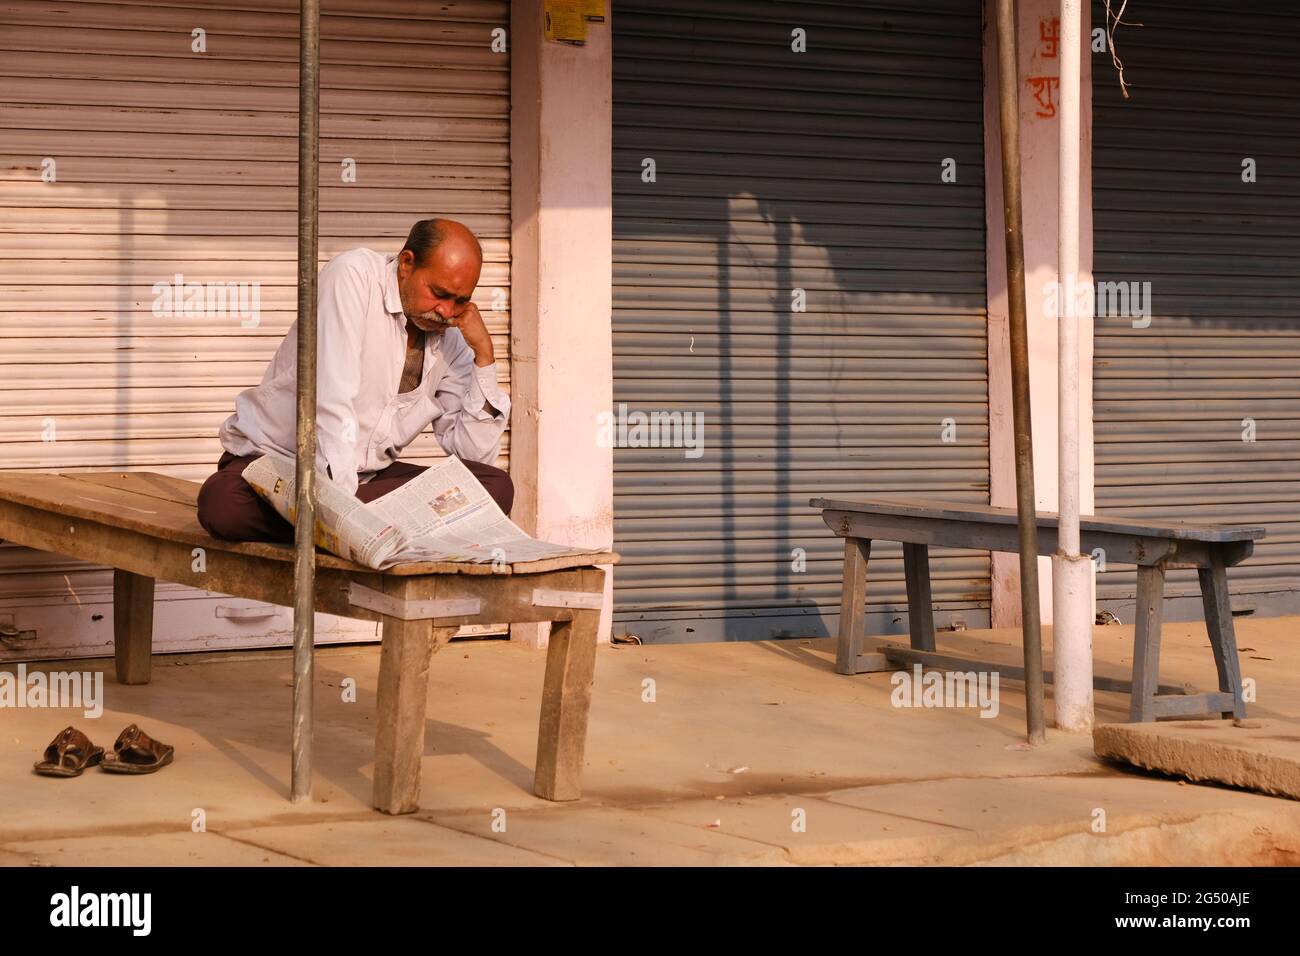 Uttar Pradesh, India, 05 febbraio 2021, un uomo che legge giornale di fronte a negozi vicini. Foto Stock